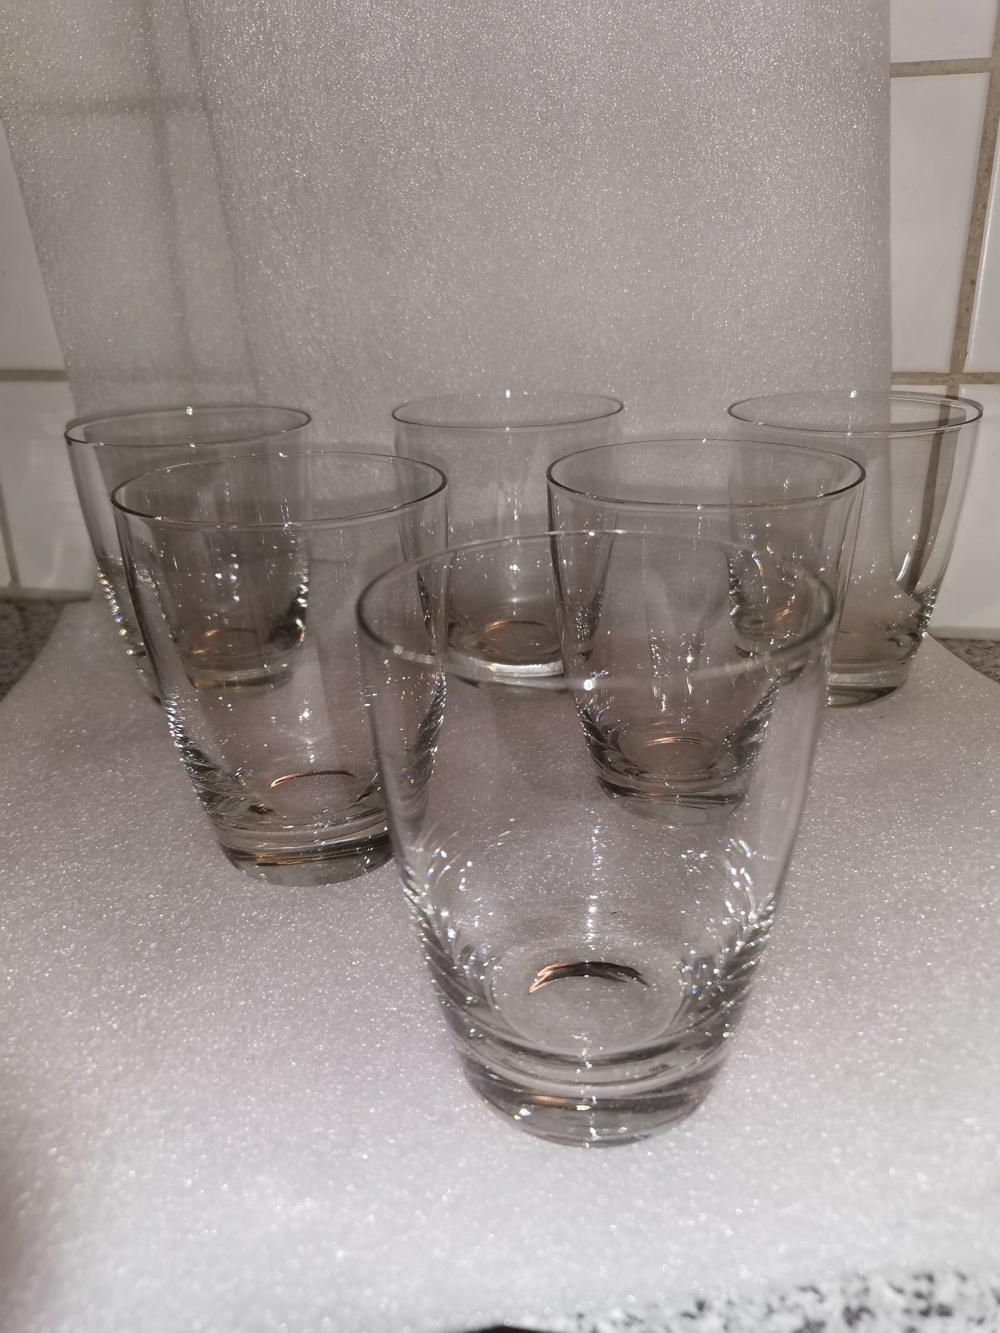 Trink- u. Nachtisch-Gläser 1 4 ltr. 6 Stk.